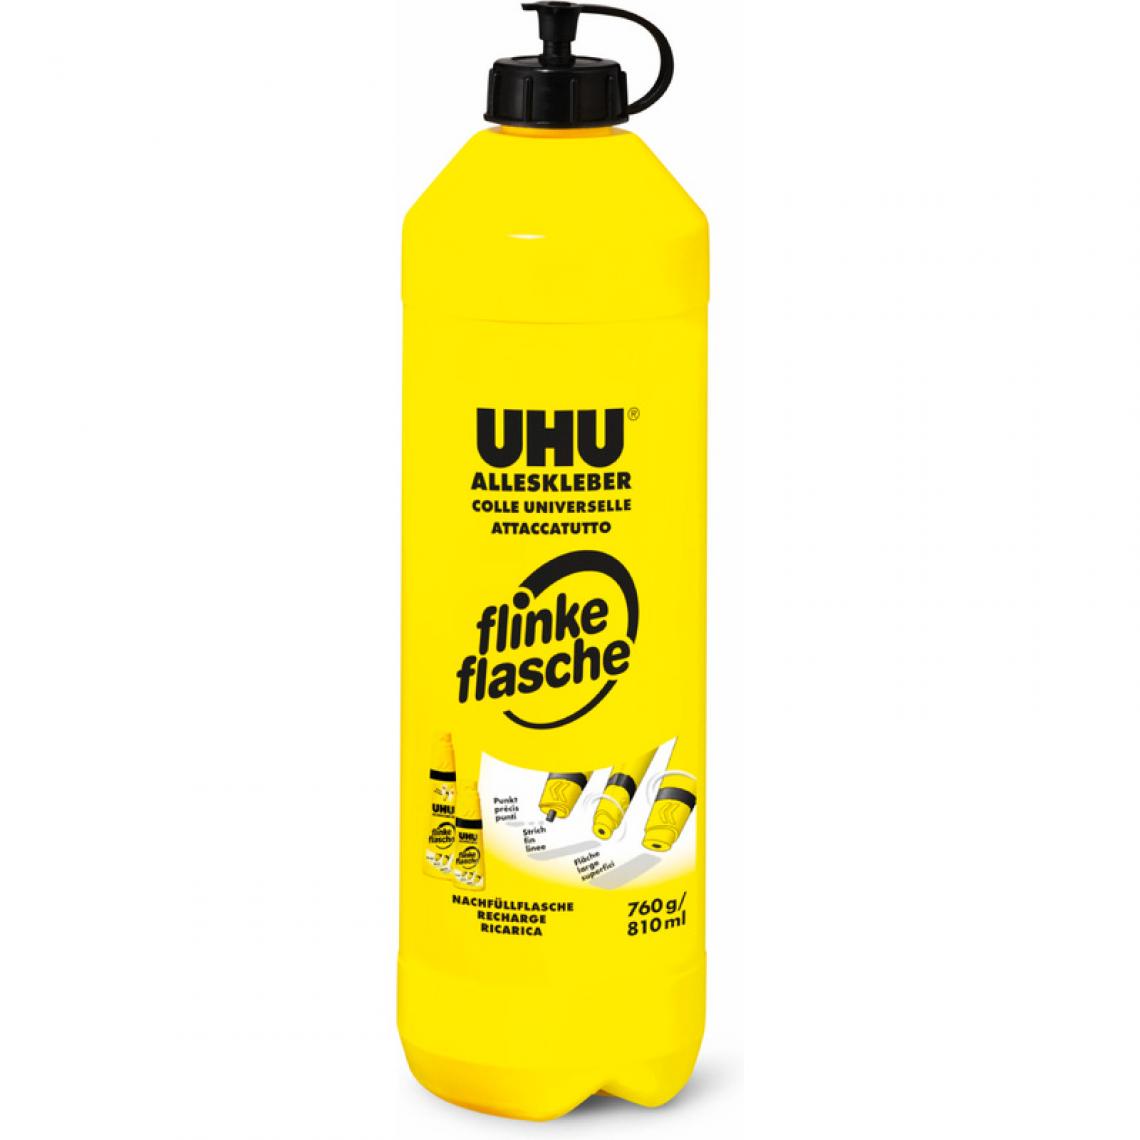 Uhu - UHU Colle universelle en flacon, recharge, 760 g () - Colles et pistolets à colle